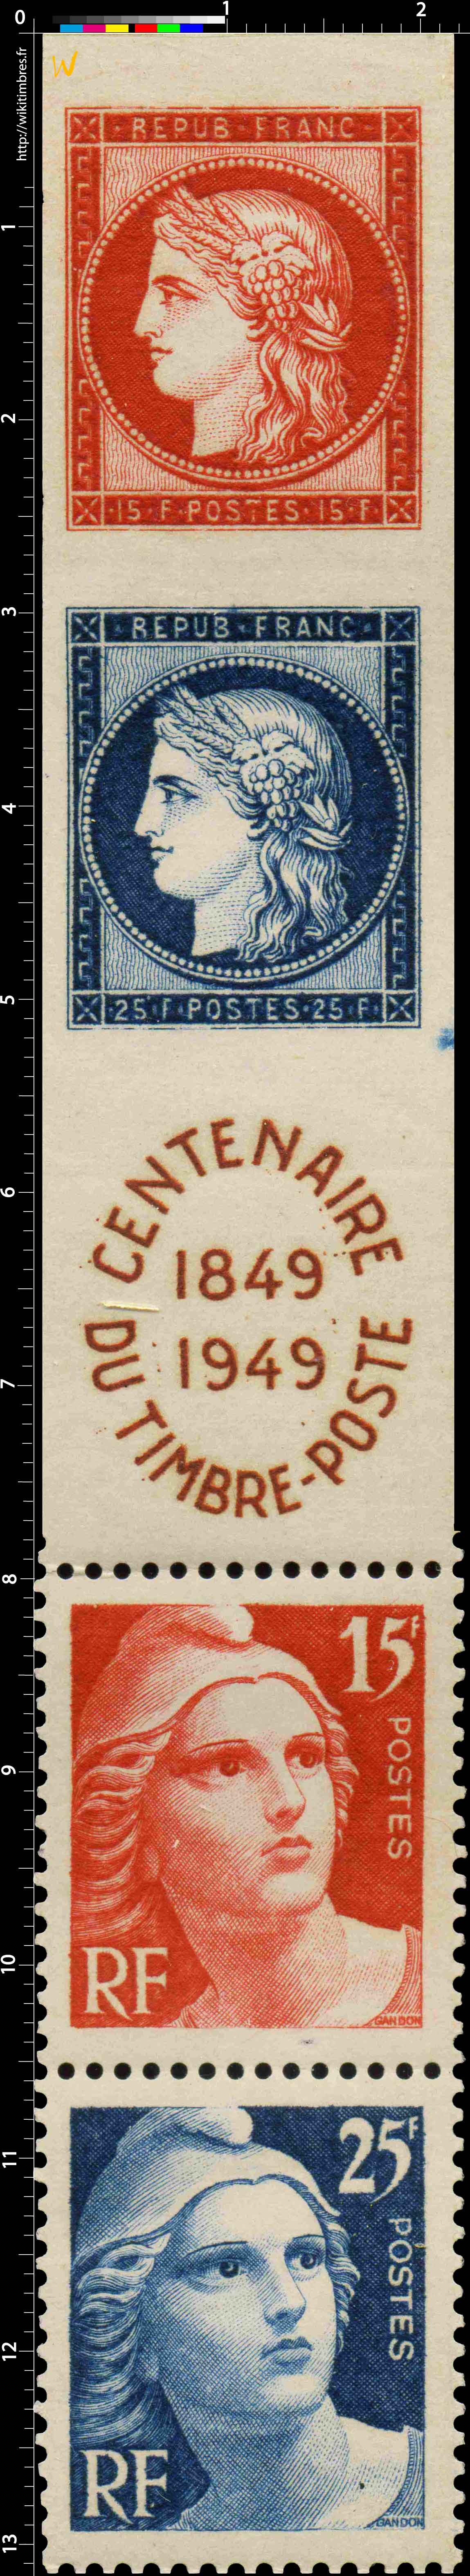 CENTENAIRE DU TIMBRE-POSTE 1849-1949